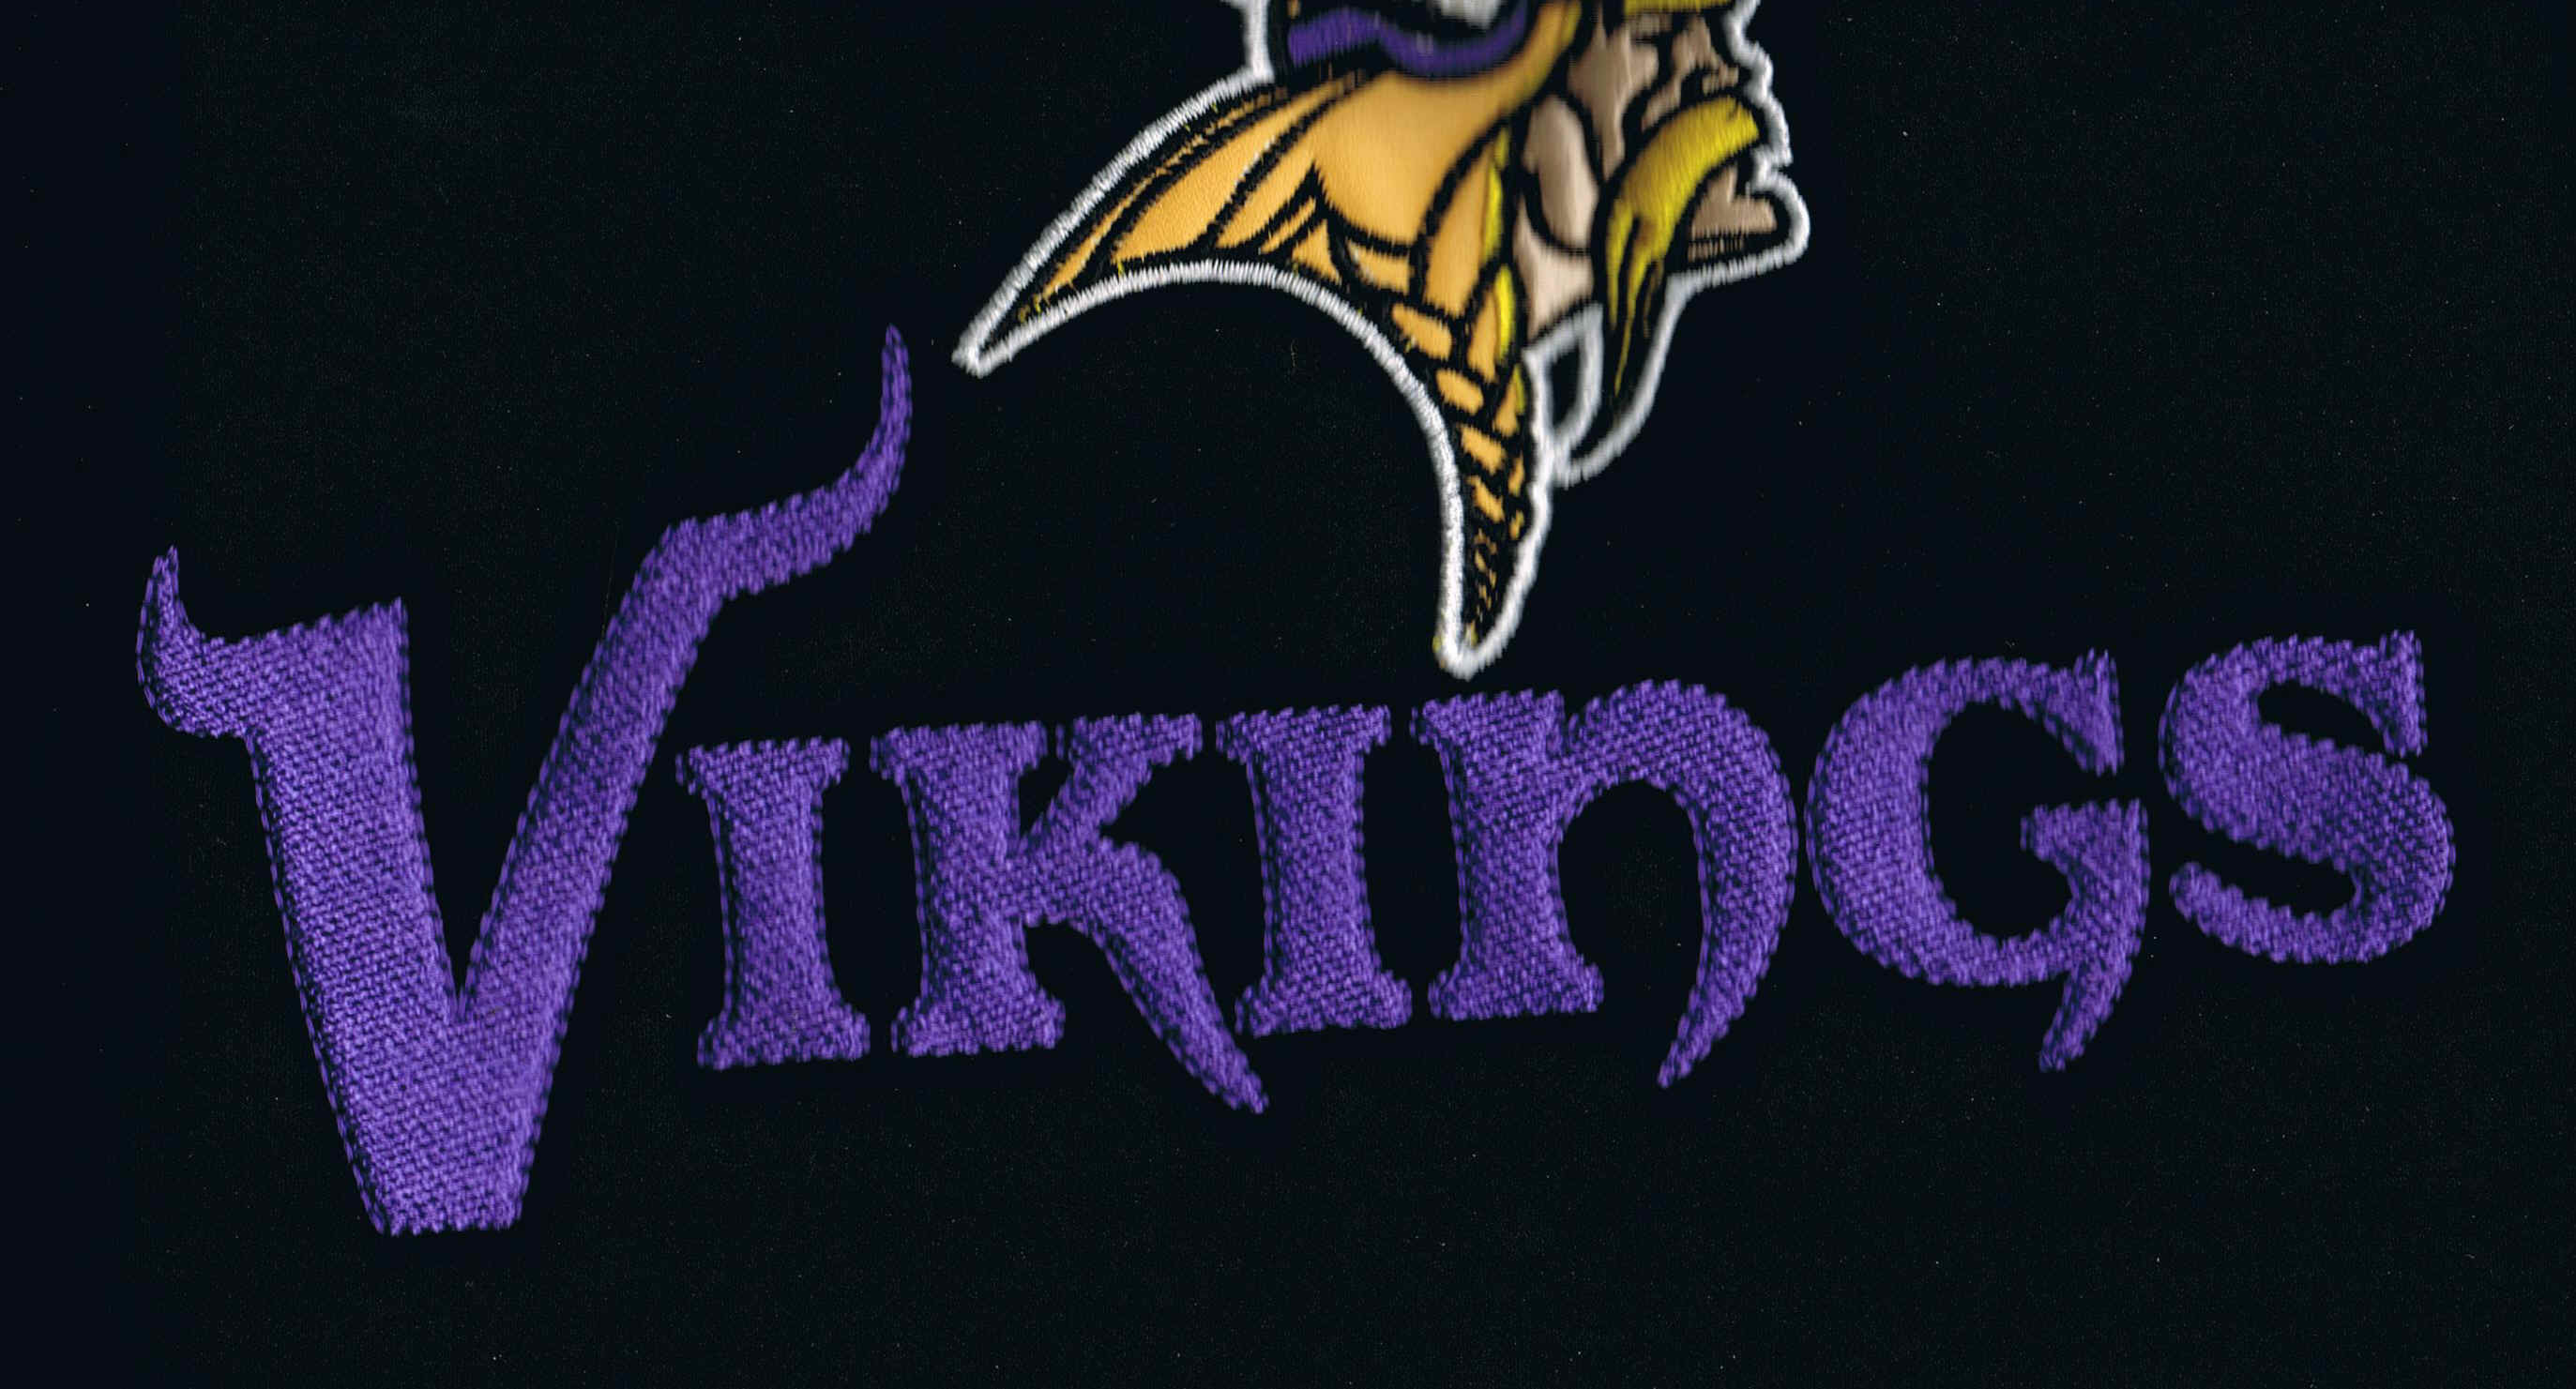 2746x1481 Minnesota-Vikings-wallpaper-icon-free